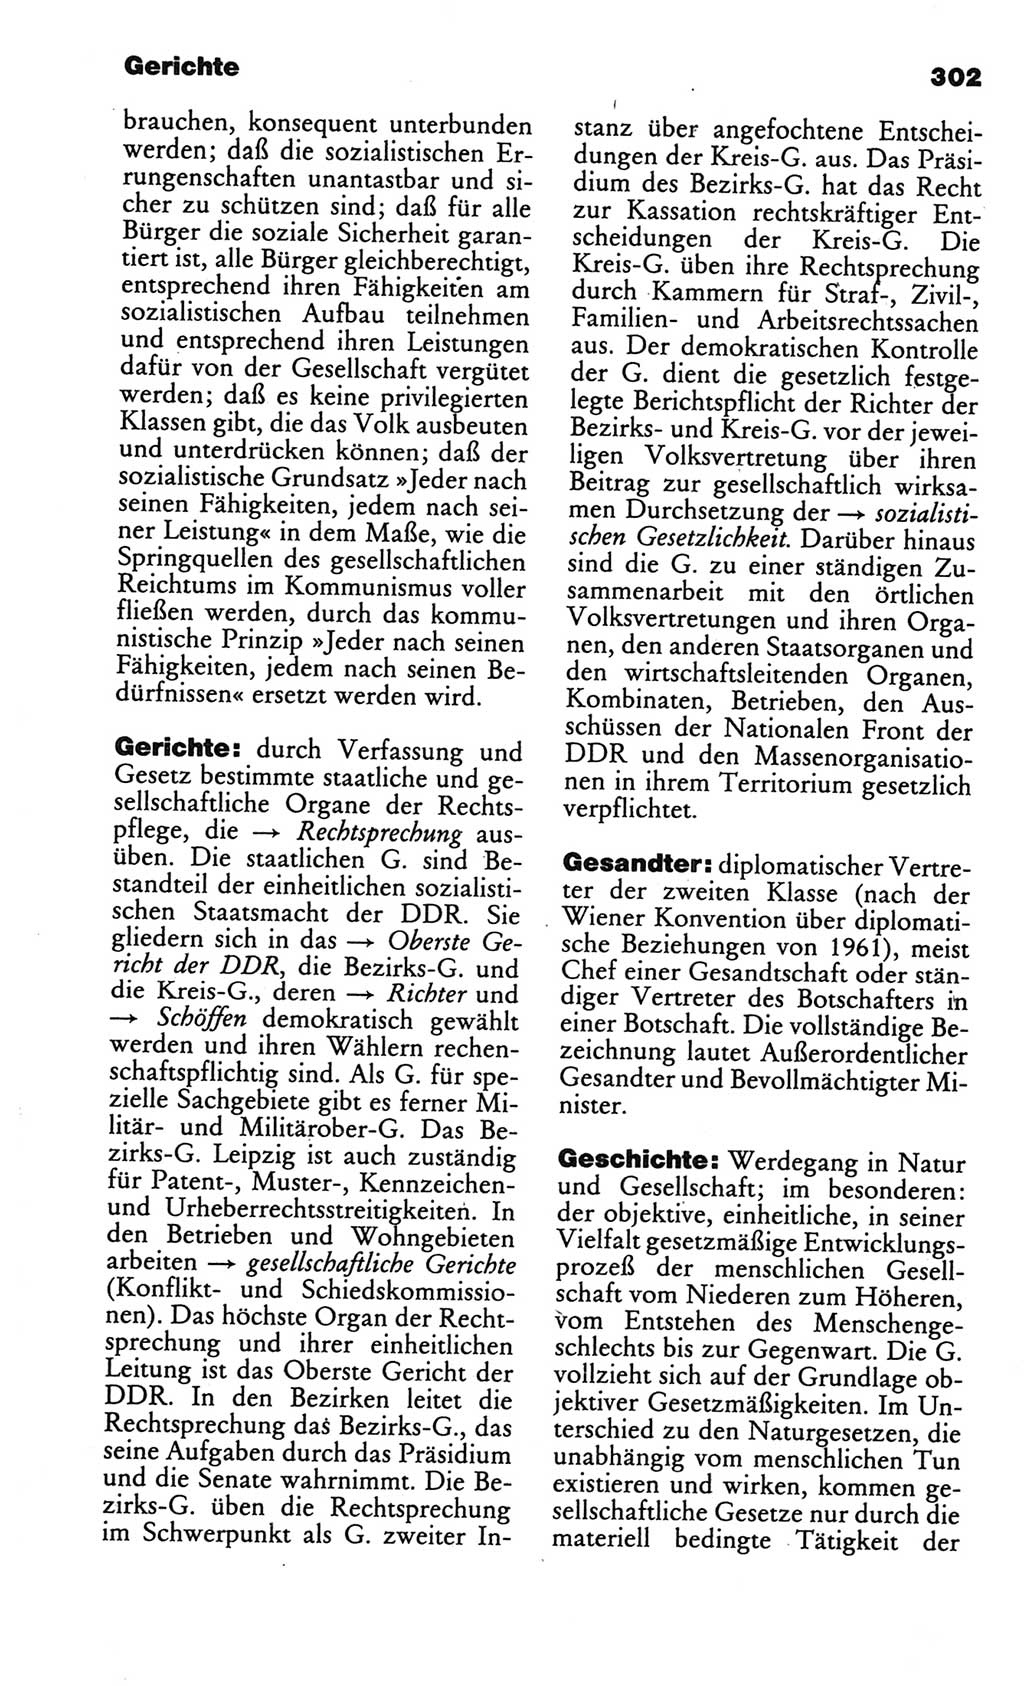 Kleines politisches Wörterbuch [Deutsche Demokratische Republik (DDR)] 1986, Seite 302 (Kl. pol. Wb. DDR 1986, S. 302)